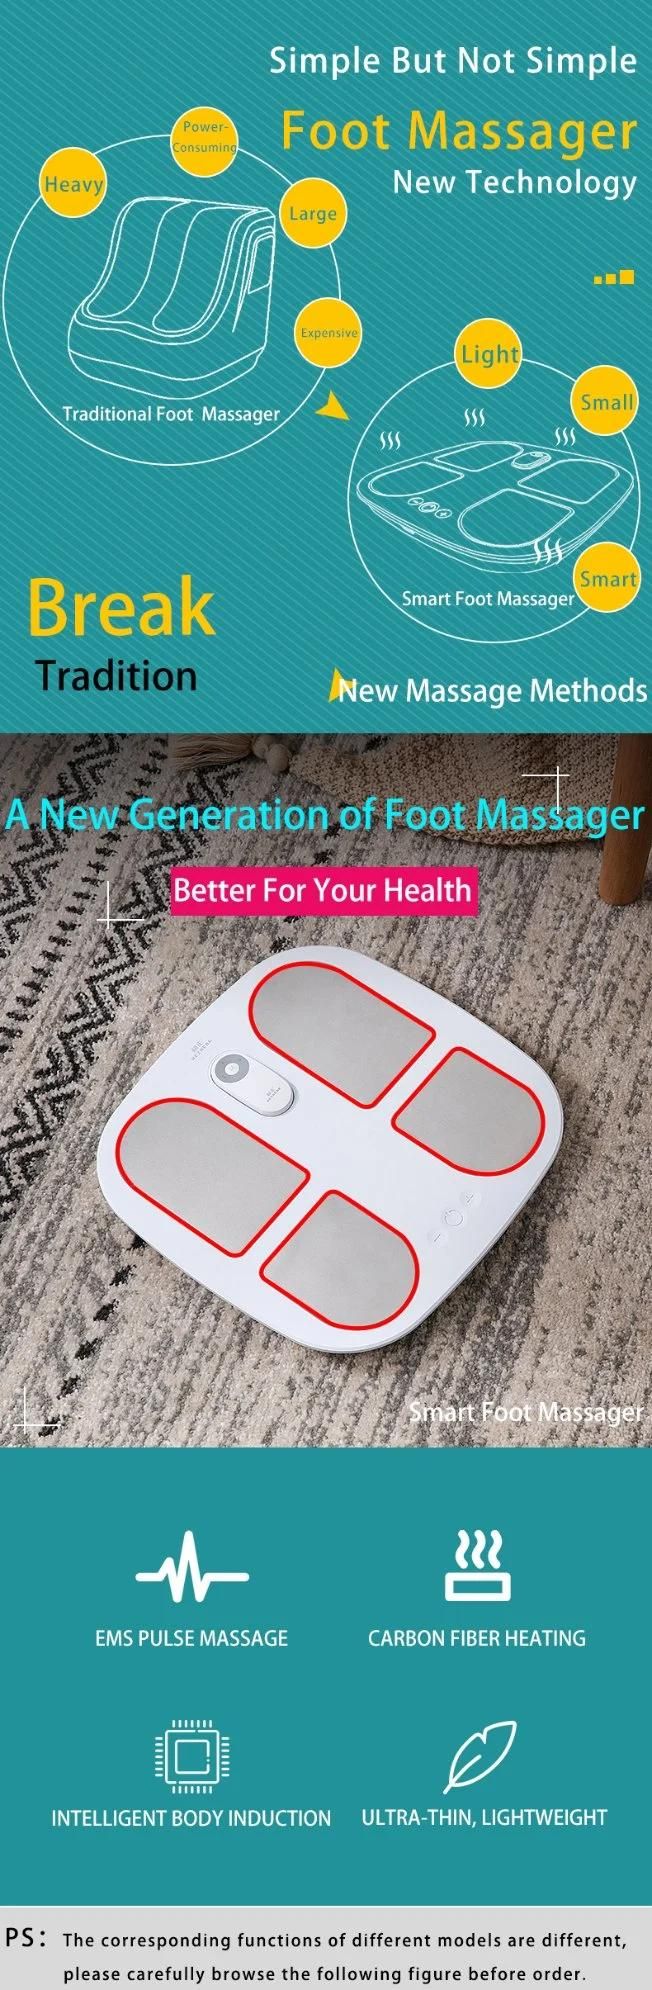 Hezheng Health Care Foot Massager